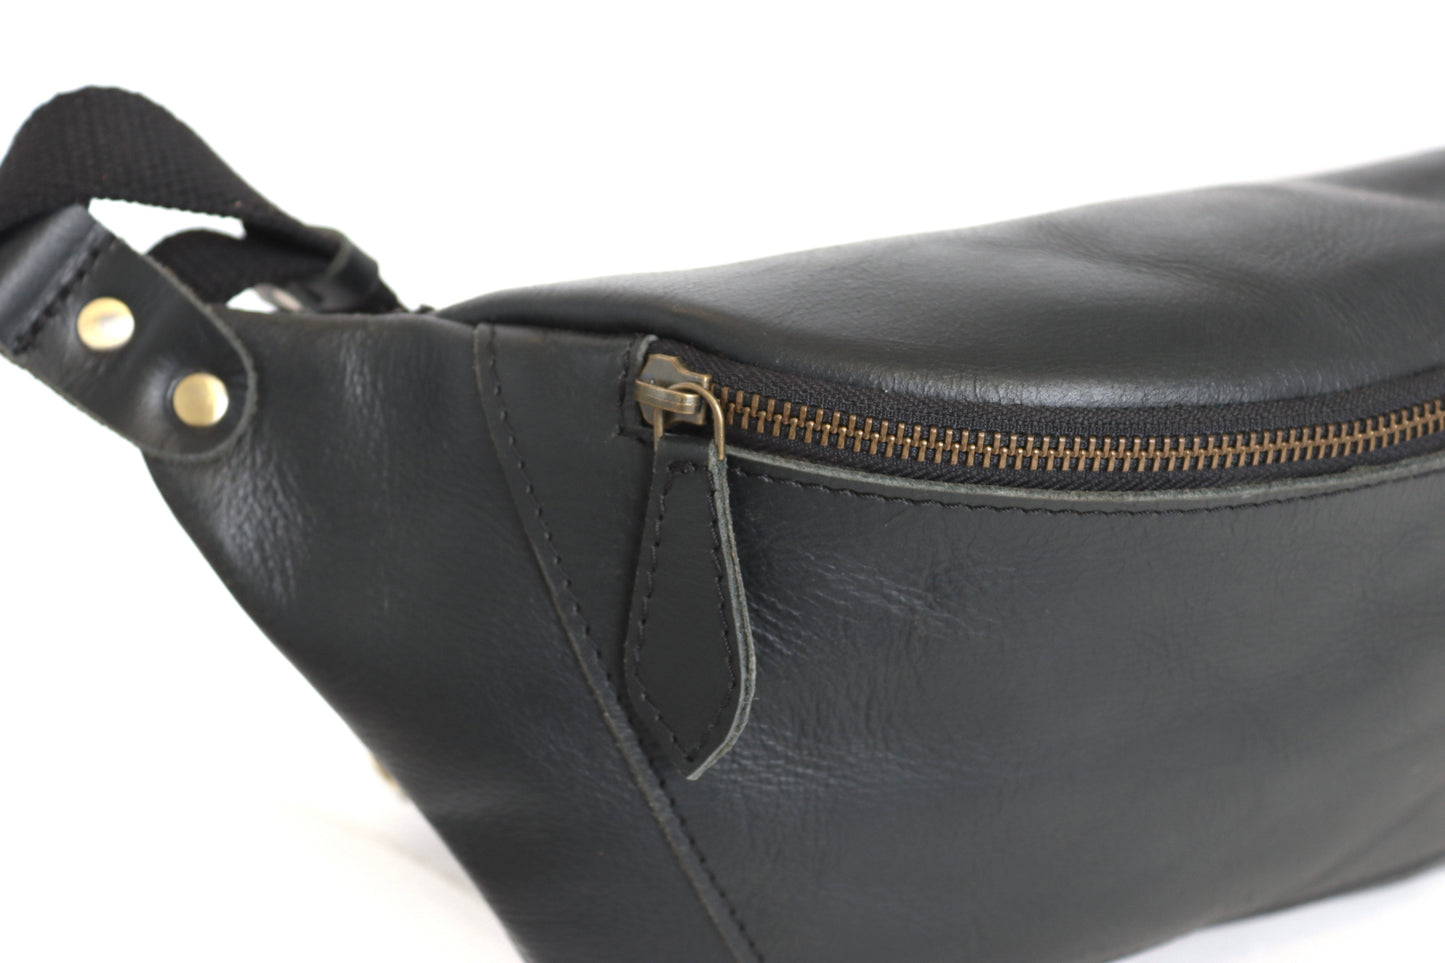 Leather Belt Bag | DENEME